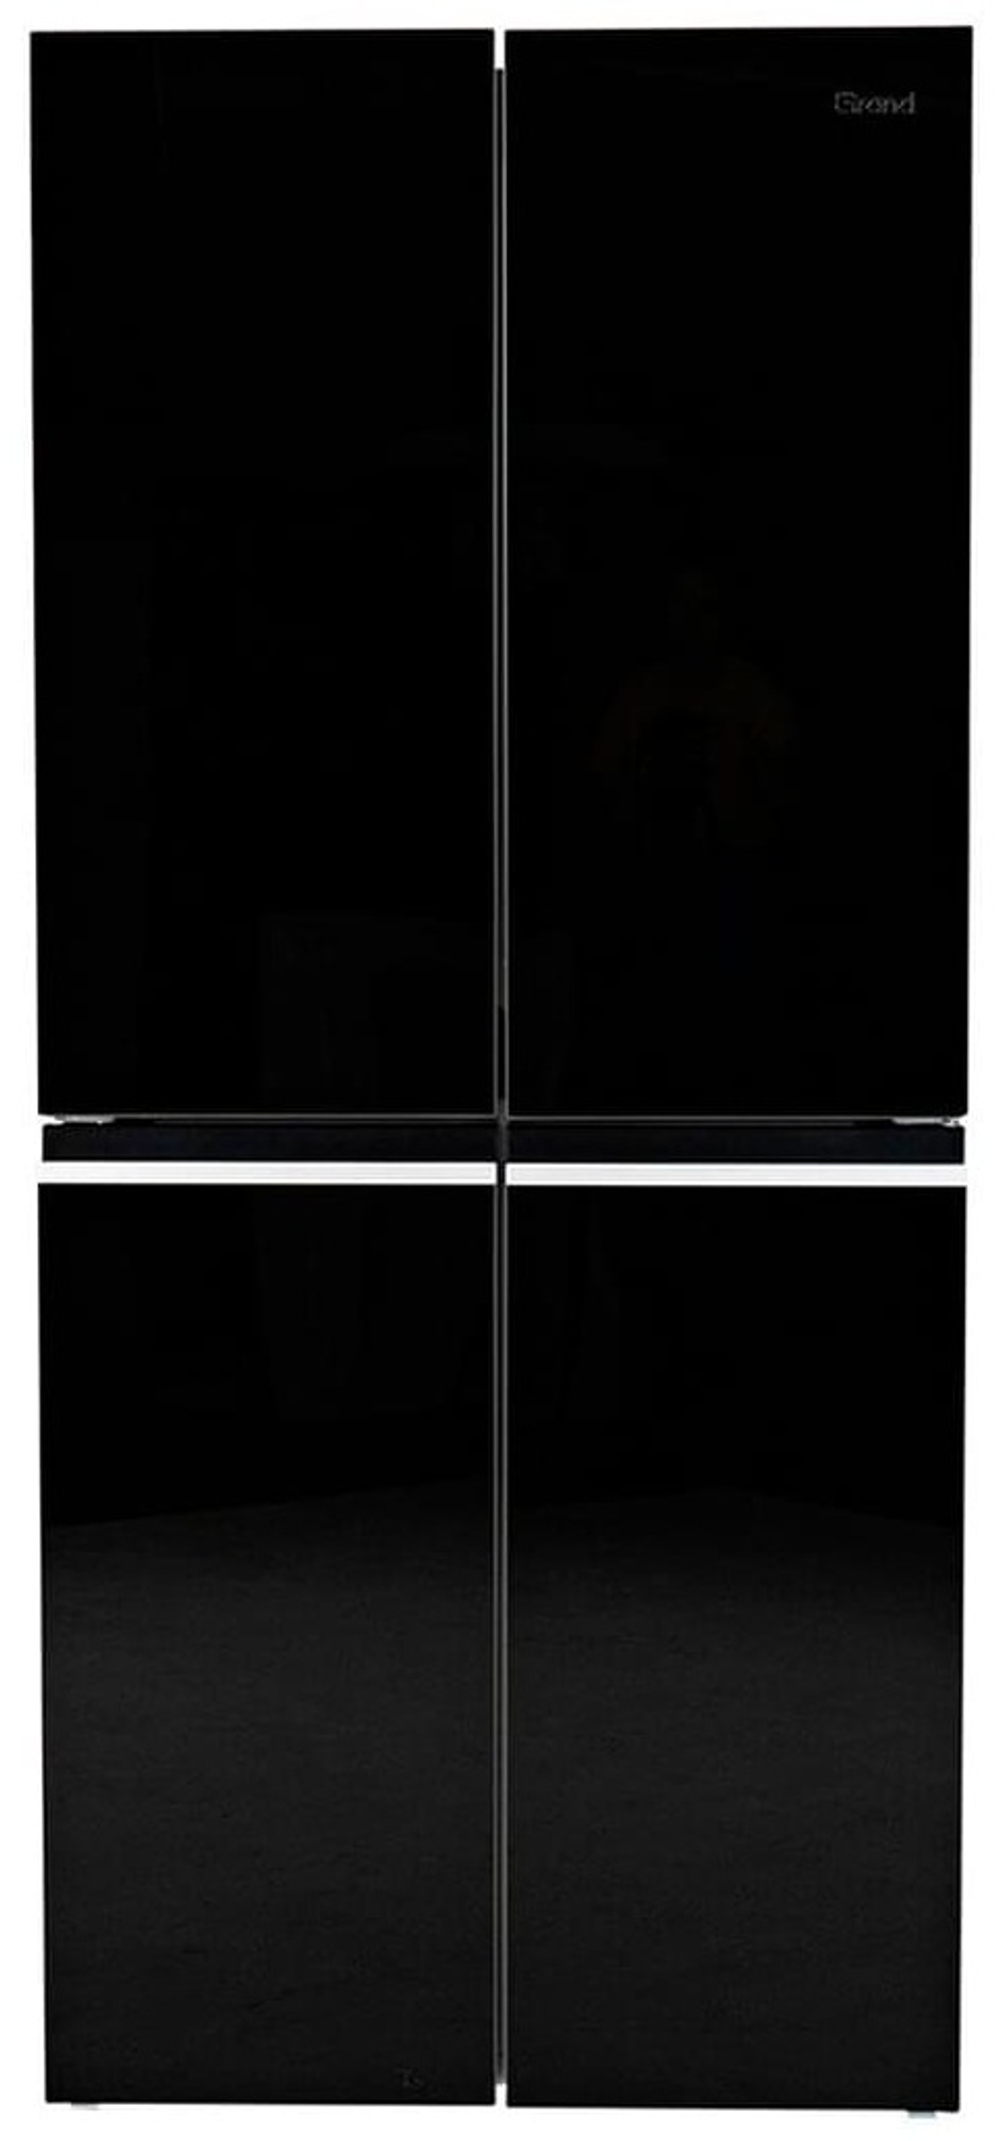 Холодильник GRAND GRFD-466BGNFO черный